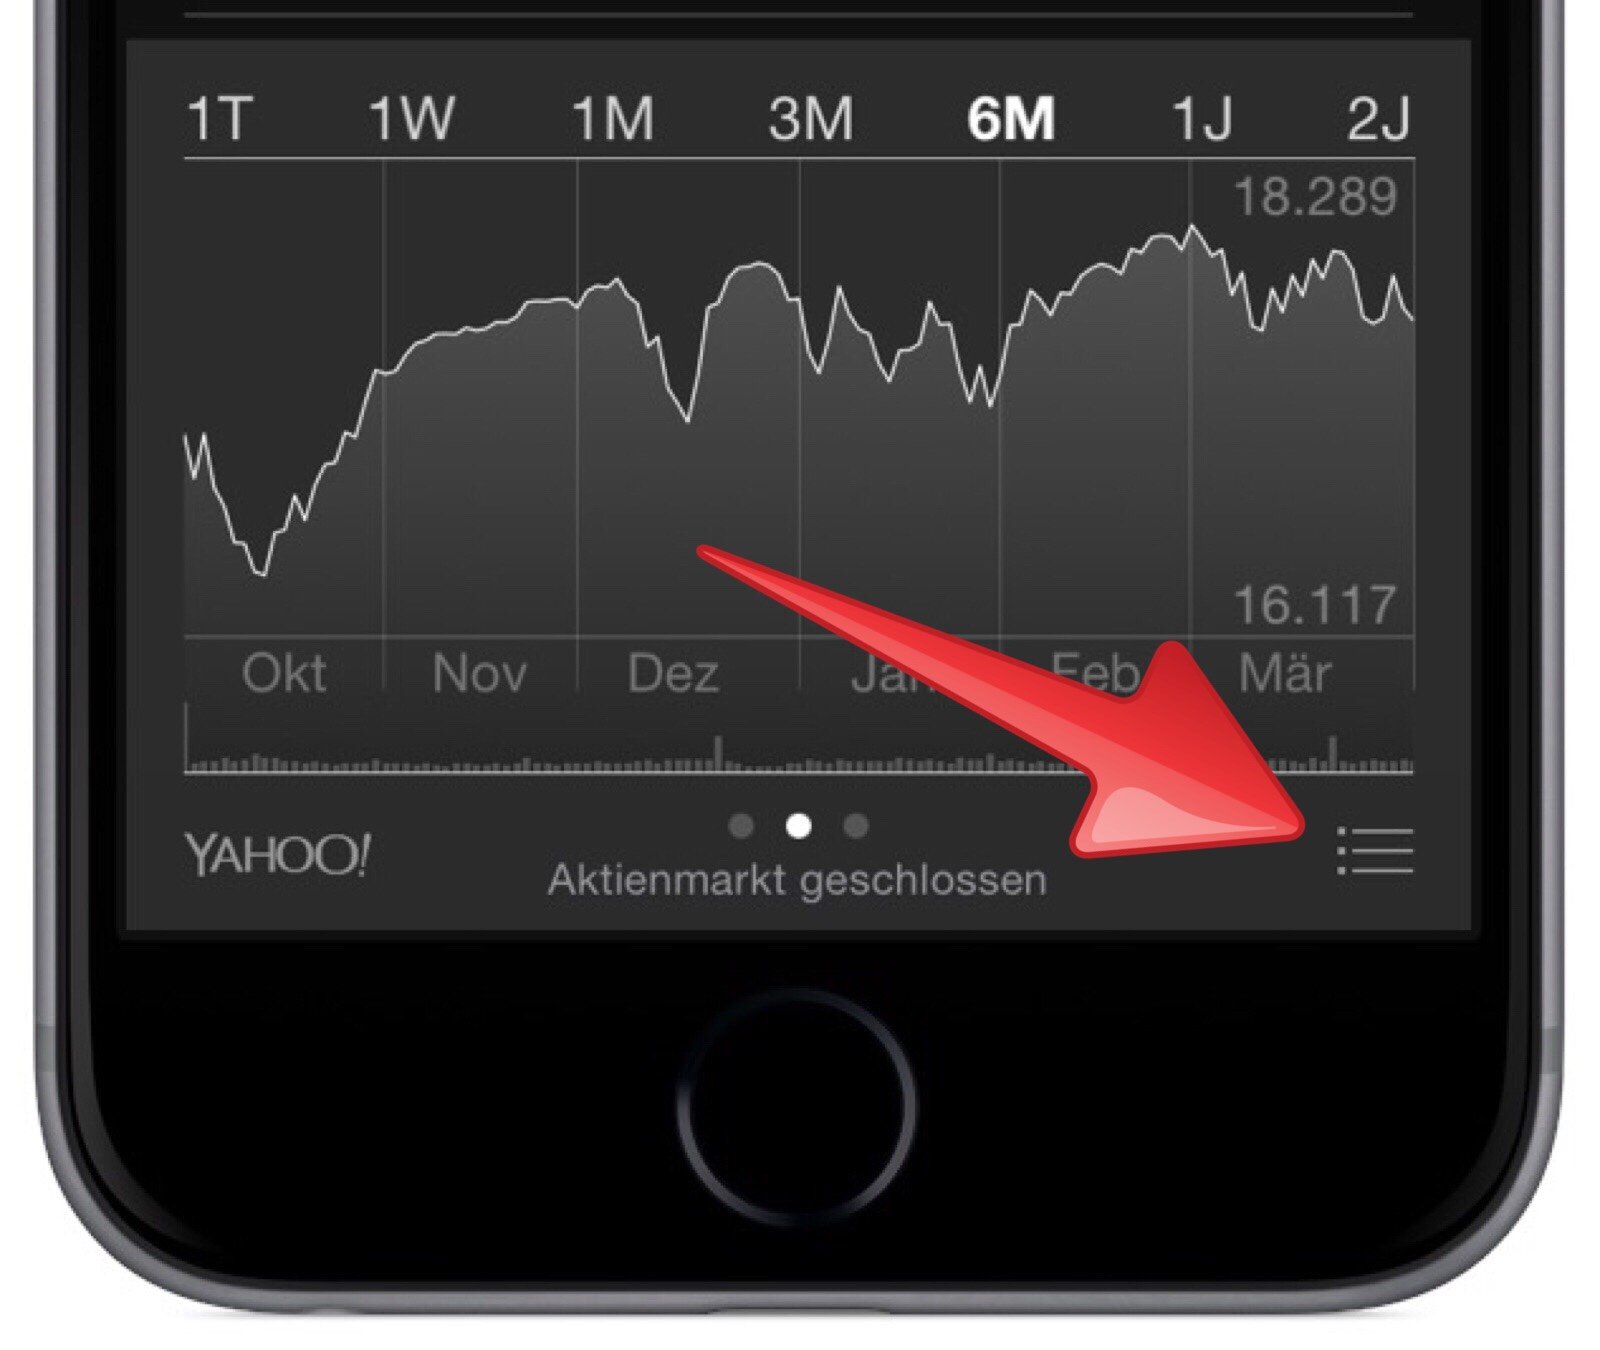 iPhone-Geldtausch-Aktien-App-Geldumtausch-Umtausch-tauschen-umrechnen-Währung-Währungskurs-2.jpg